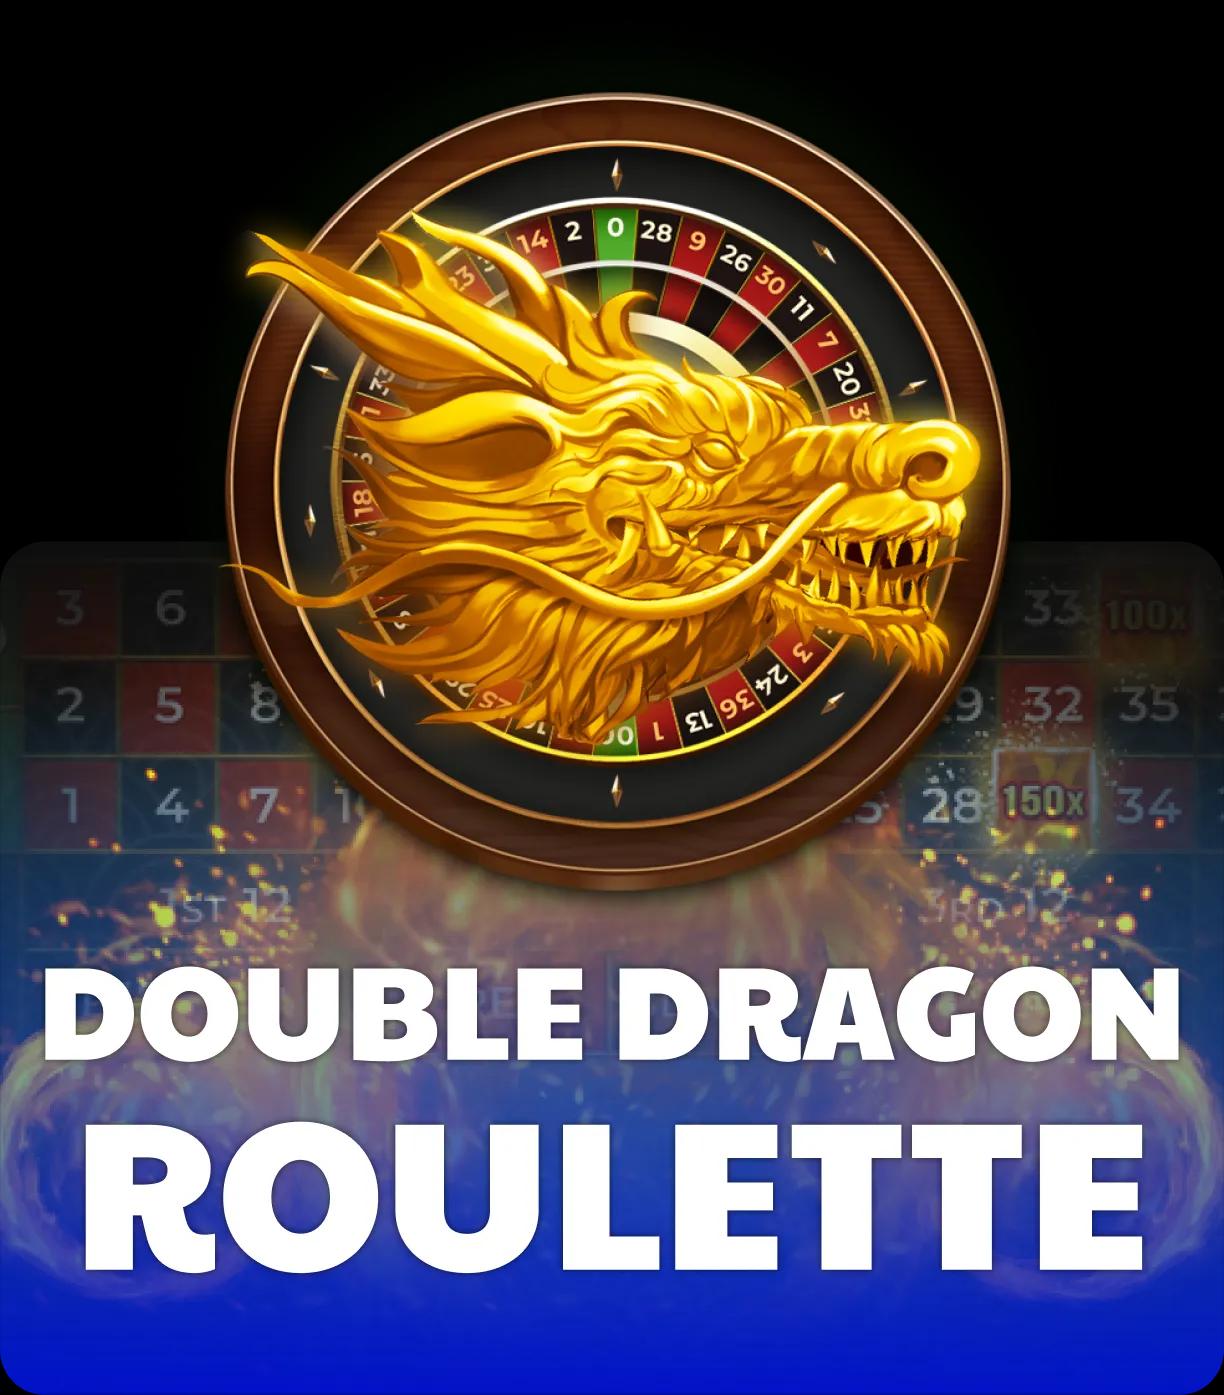 dg-double-dragon-roulette-square.webp